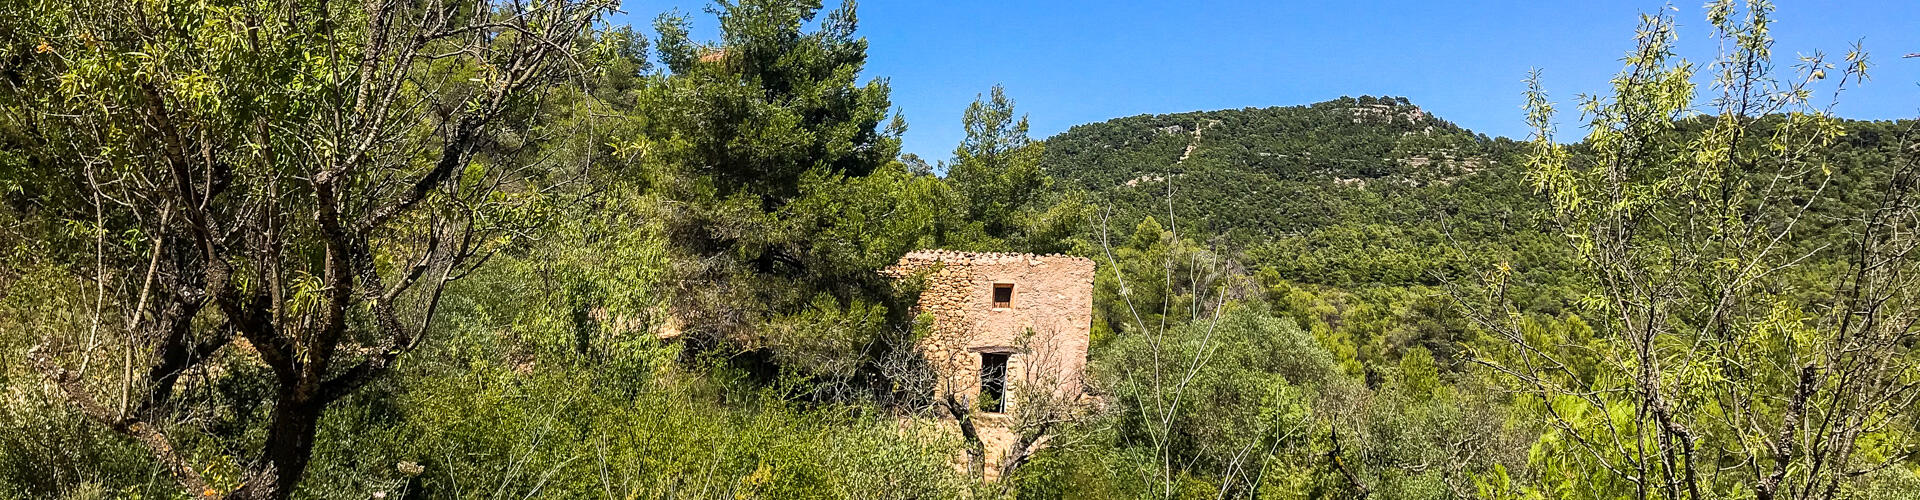 Ruta de les Trinxeres i la serra de les Obagues. La Torre de l'Espanyol.